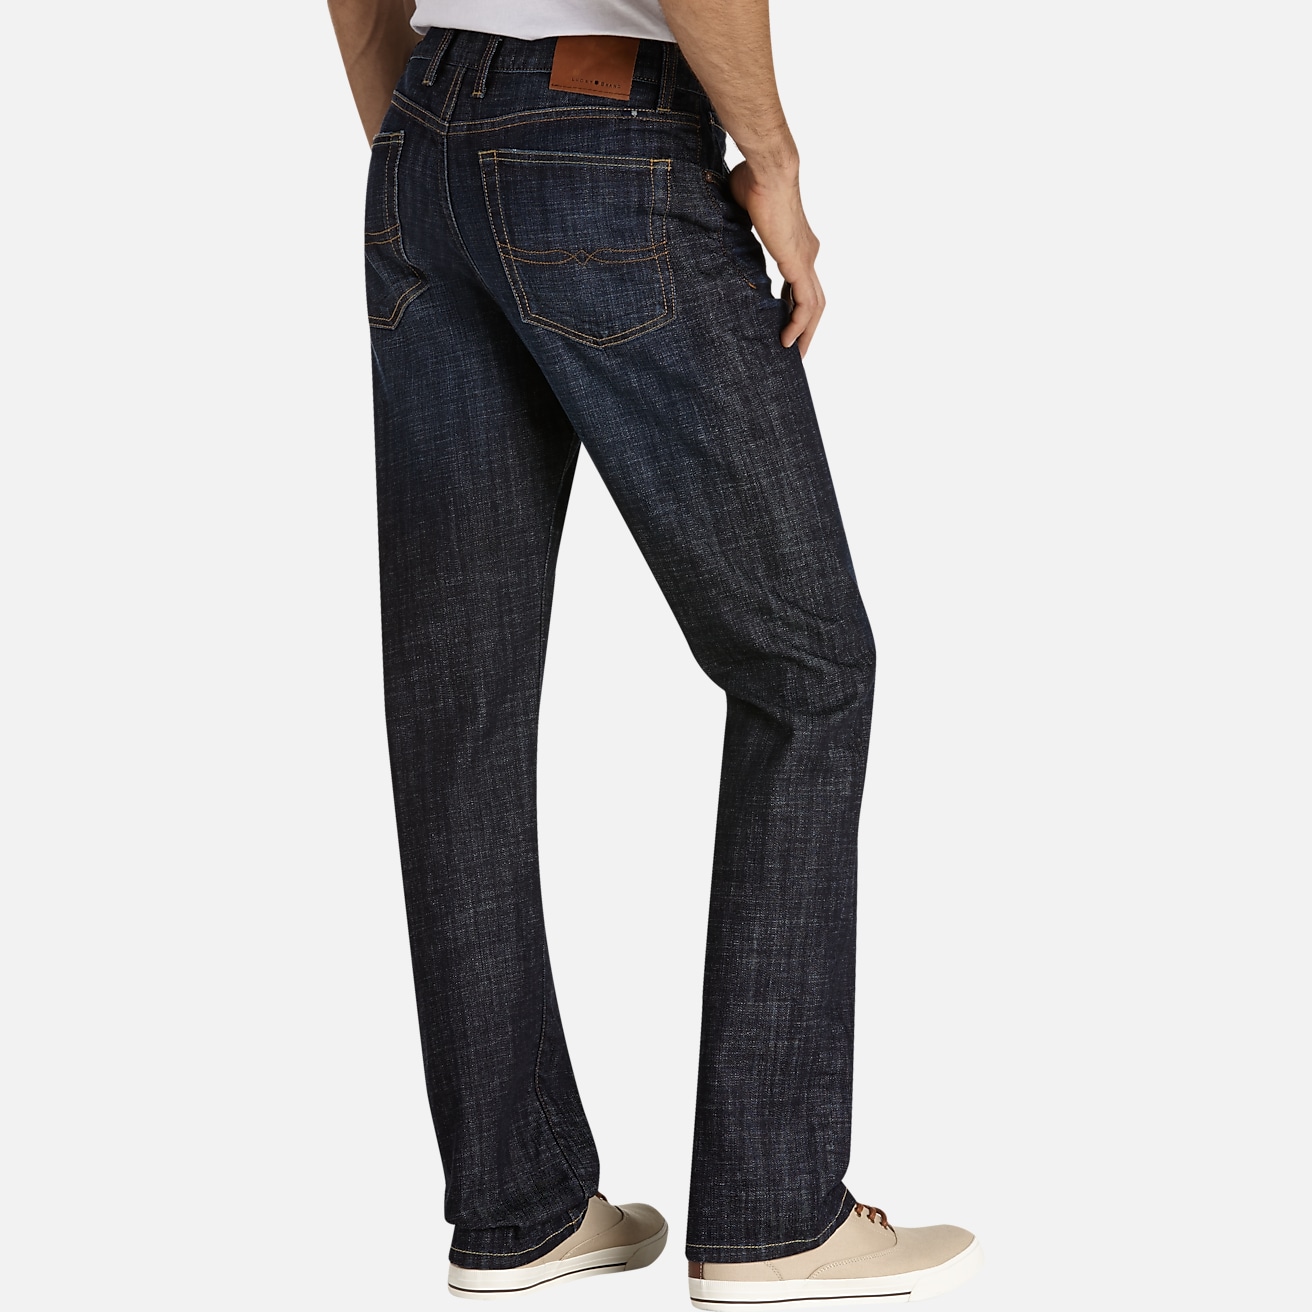 Buy Warrior Men Tone jeans 3 Colour Set Wholesale rs. 555 Per-Piece